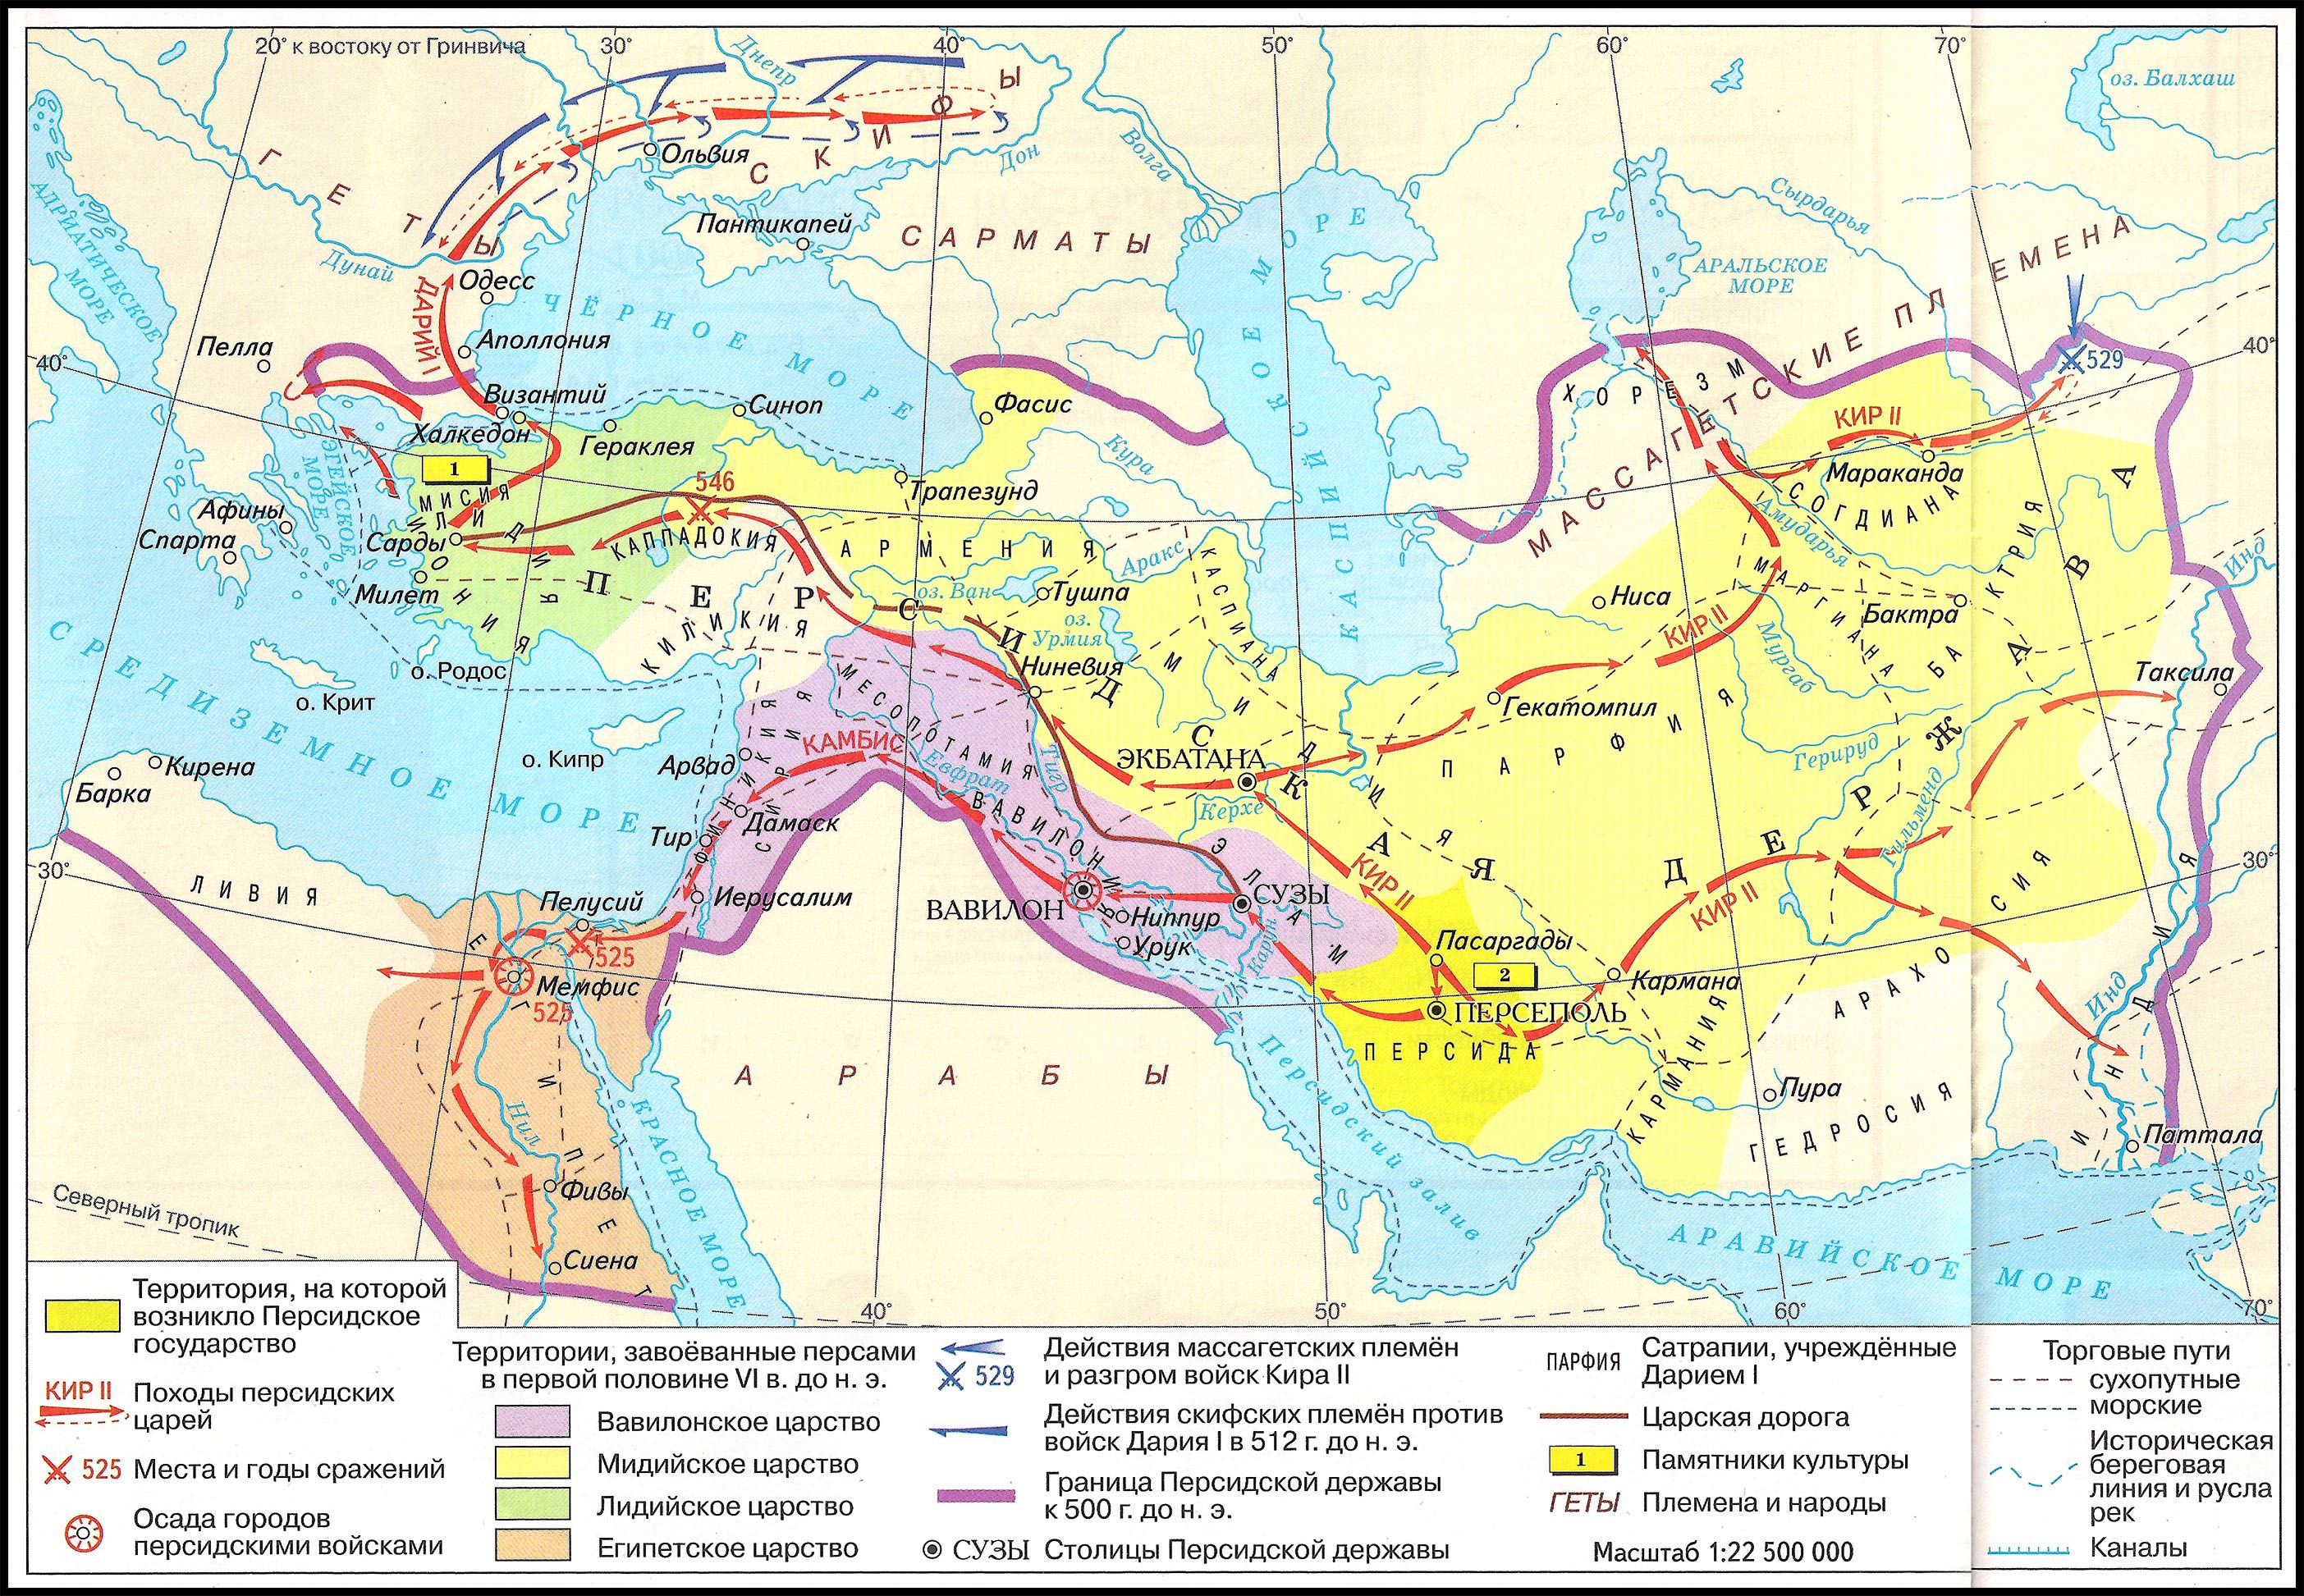 Персидская держава 5 класс на карте впр